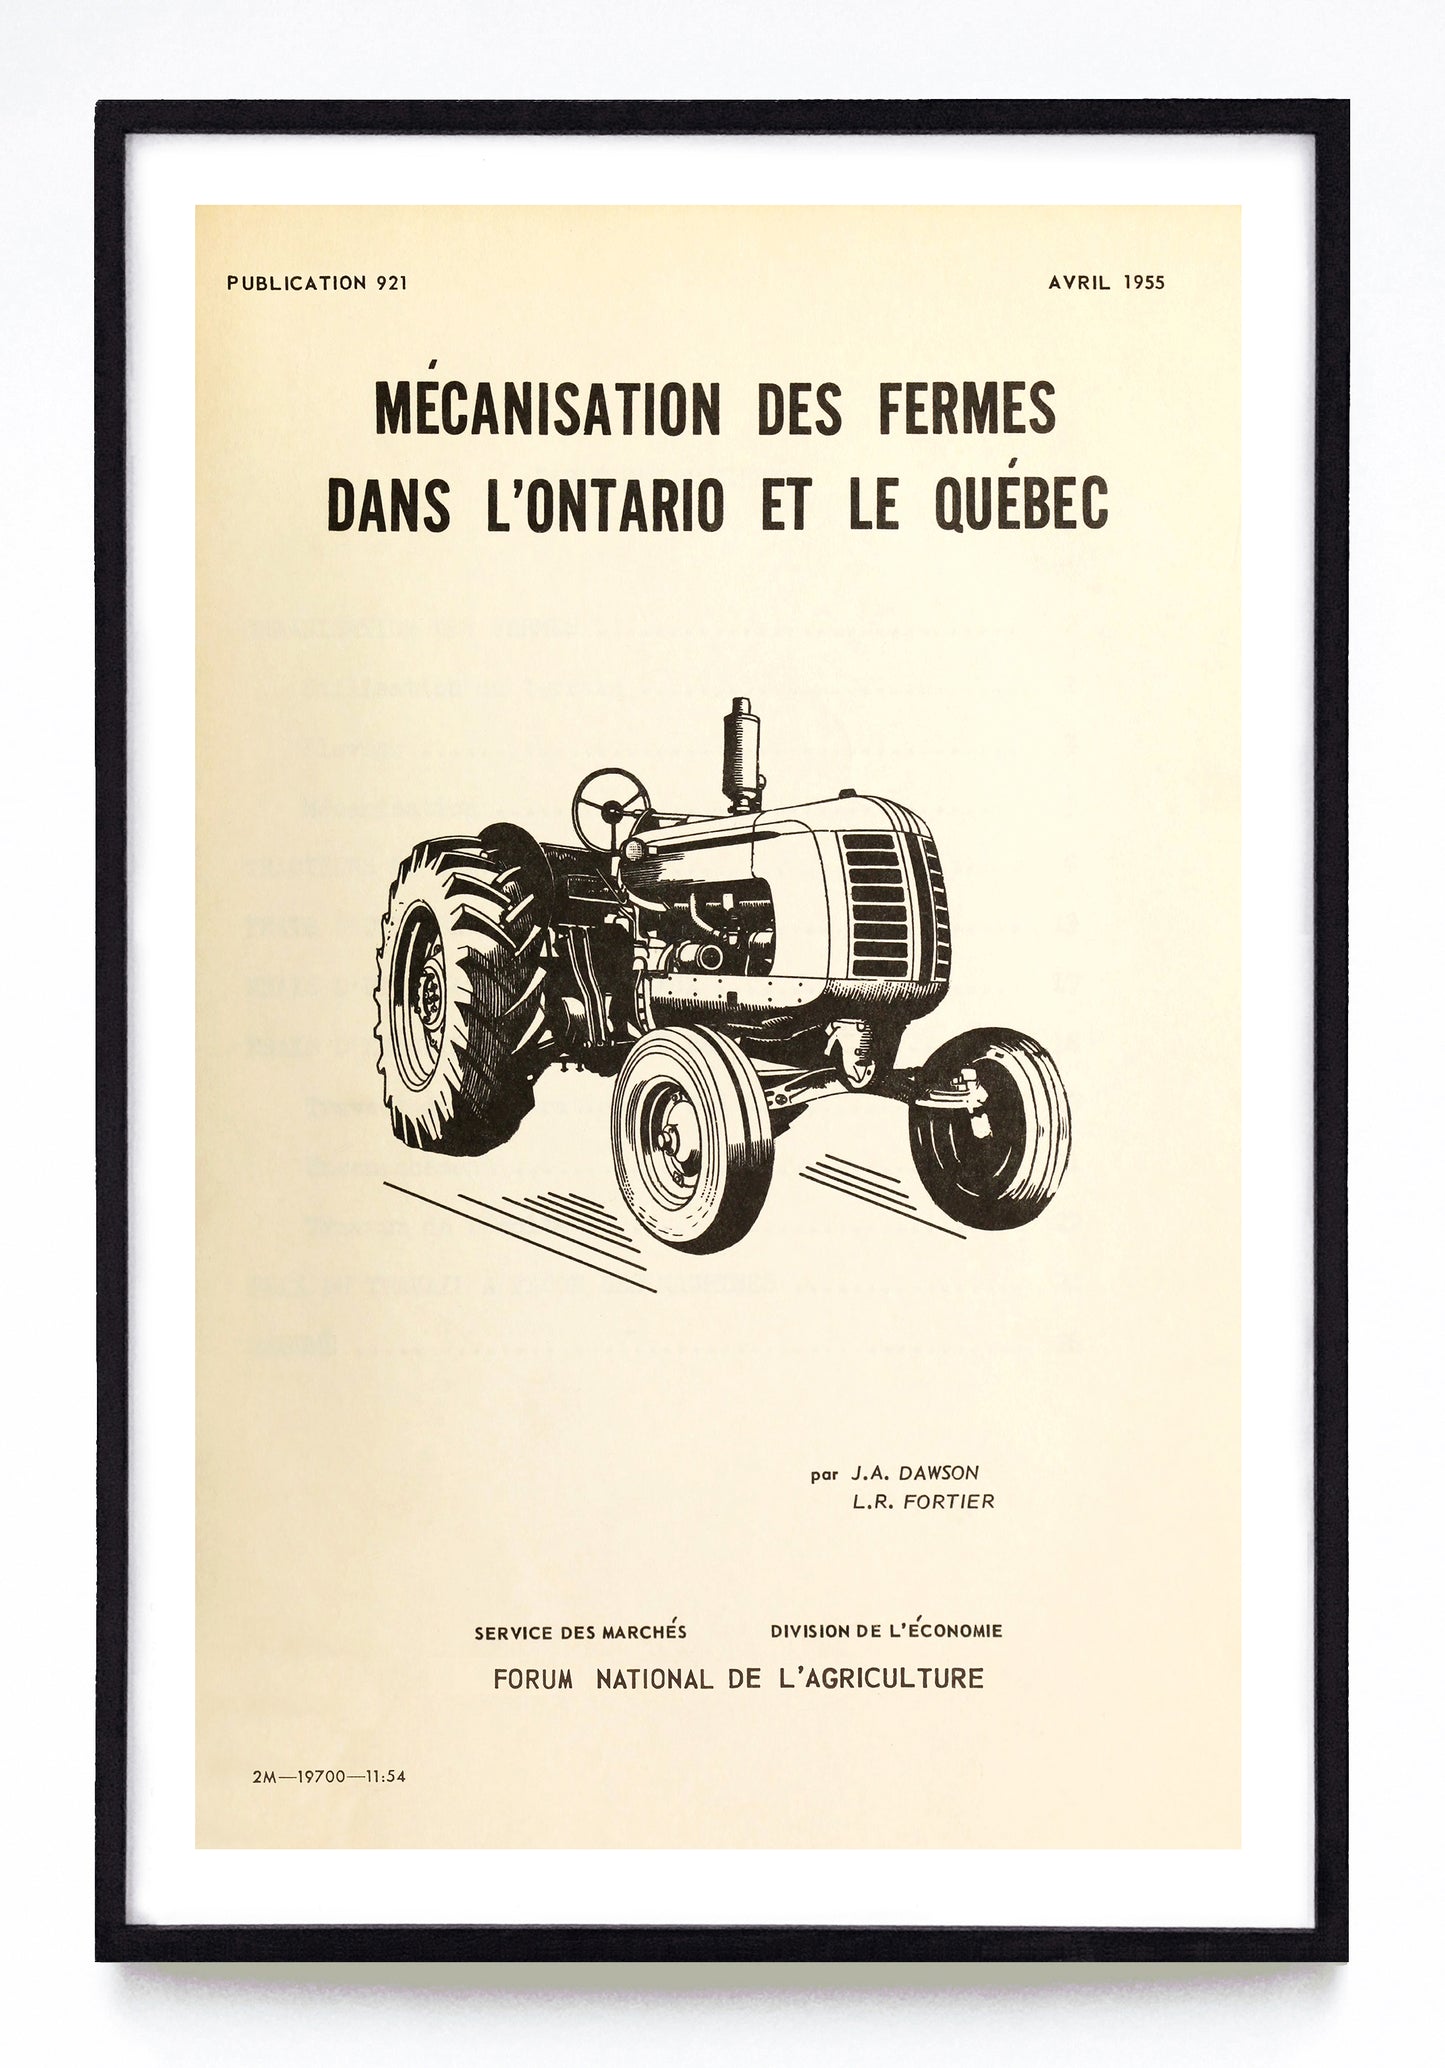 "Farm Mechanization in Ontario and Quebec" and "Mécanisation des Fermes dans L'Ontario et le Québec" prints (1954, 1955)